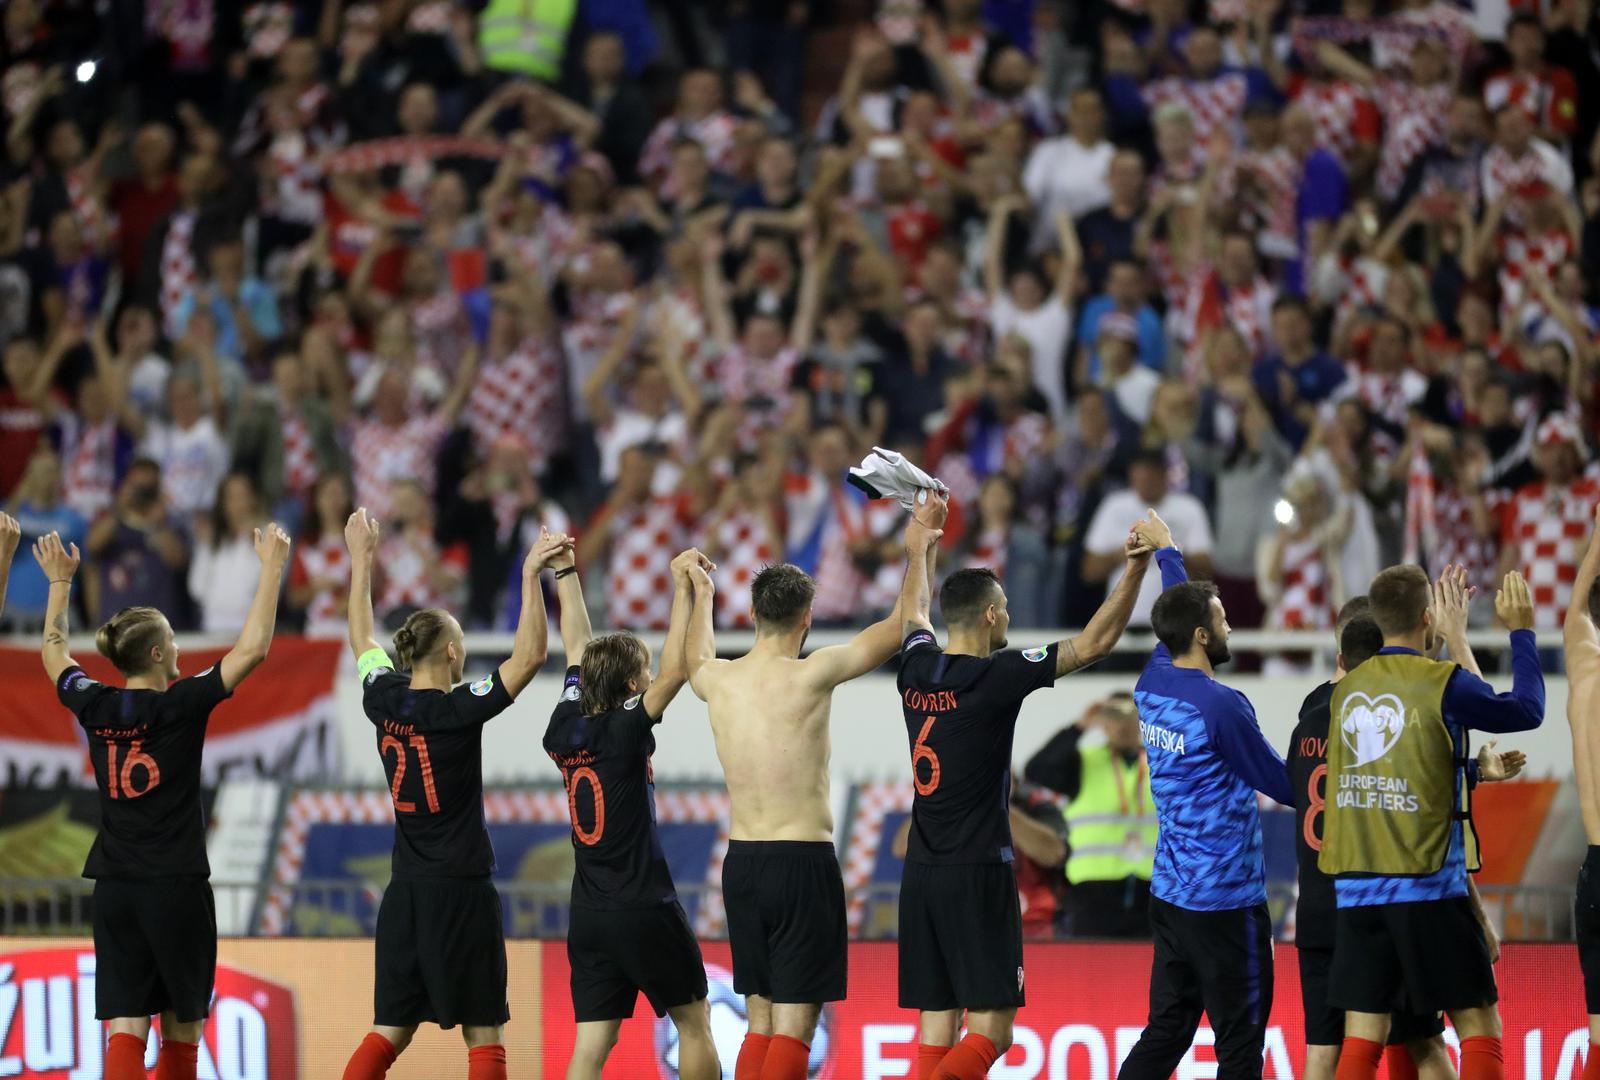 Igrači Zlatka Dalića odigrali su fenomenalnu utakmicu i slavili s 3:0 te se maksimalno približili plasmanu na Europsko prvenstvo iduće godine. 

